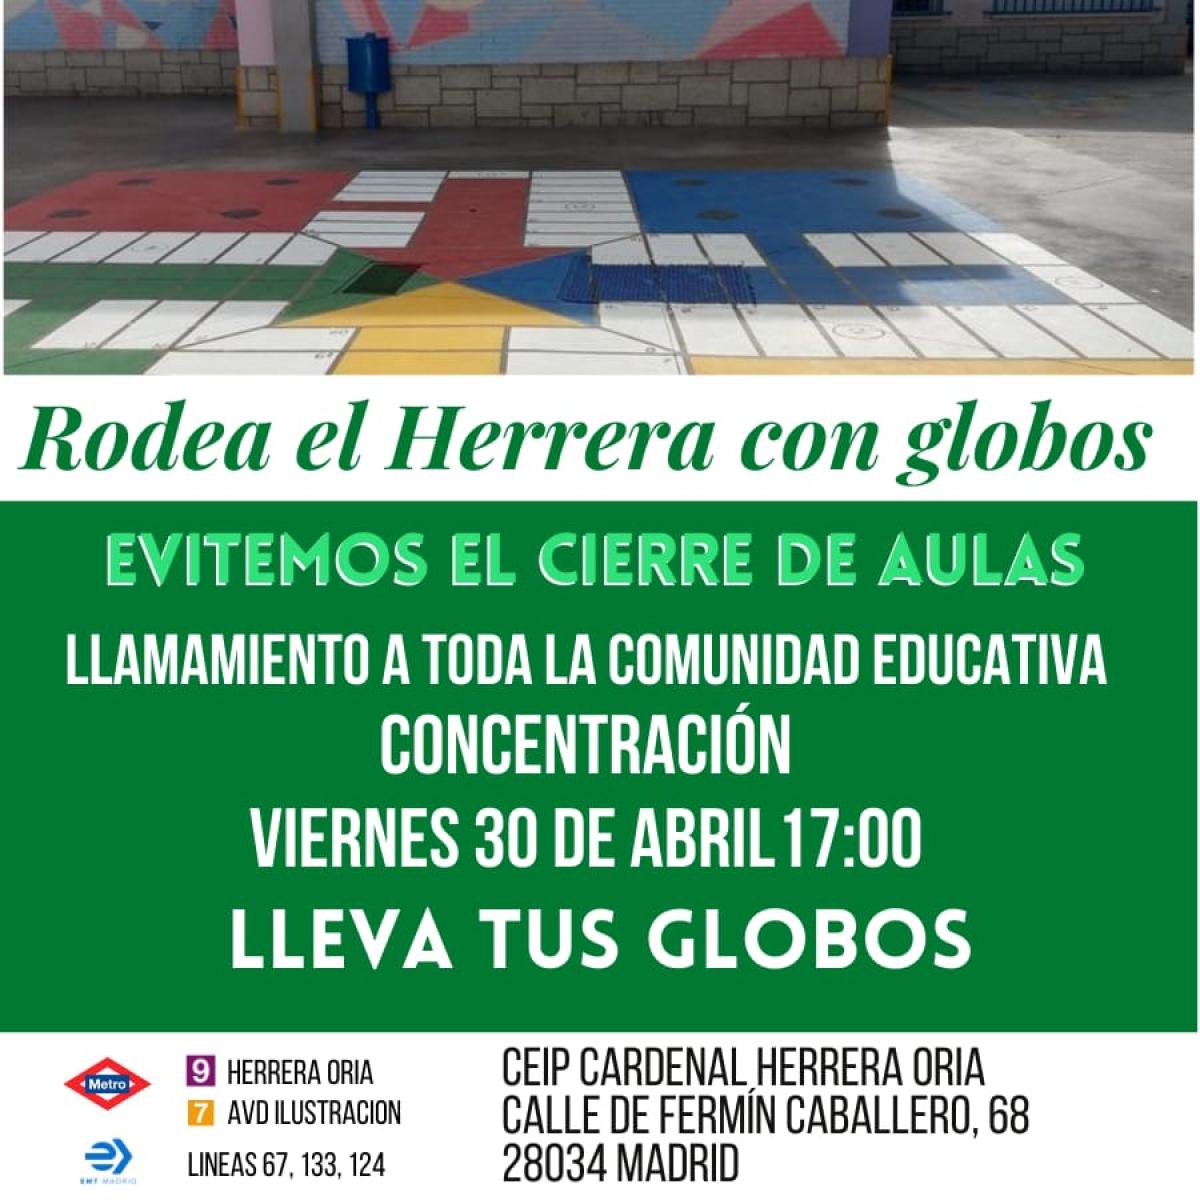 CCOO apoya las movilizaciones contra el cierre de líneas en el CEIP Cardenal Herrera Oria